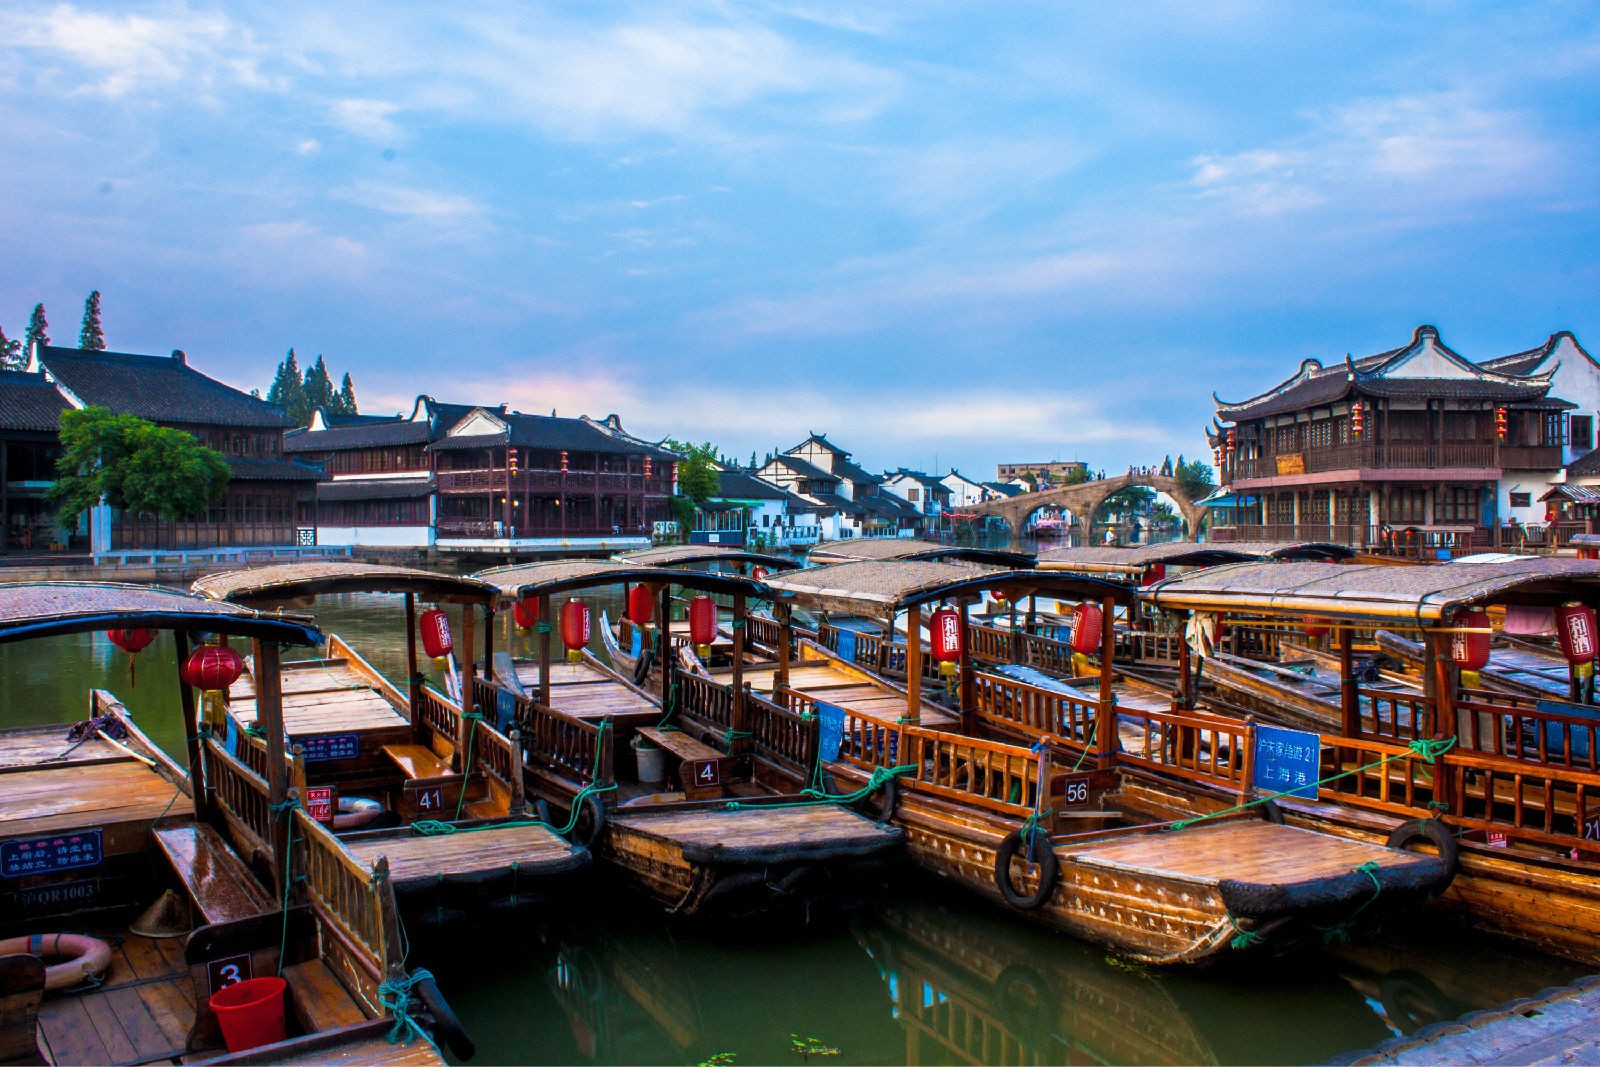 Boat-Ride-in-Zhujiajiao-Water-Town